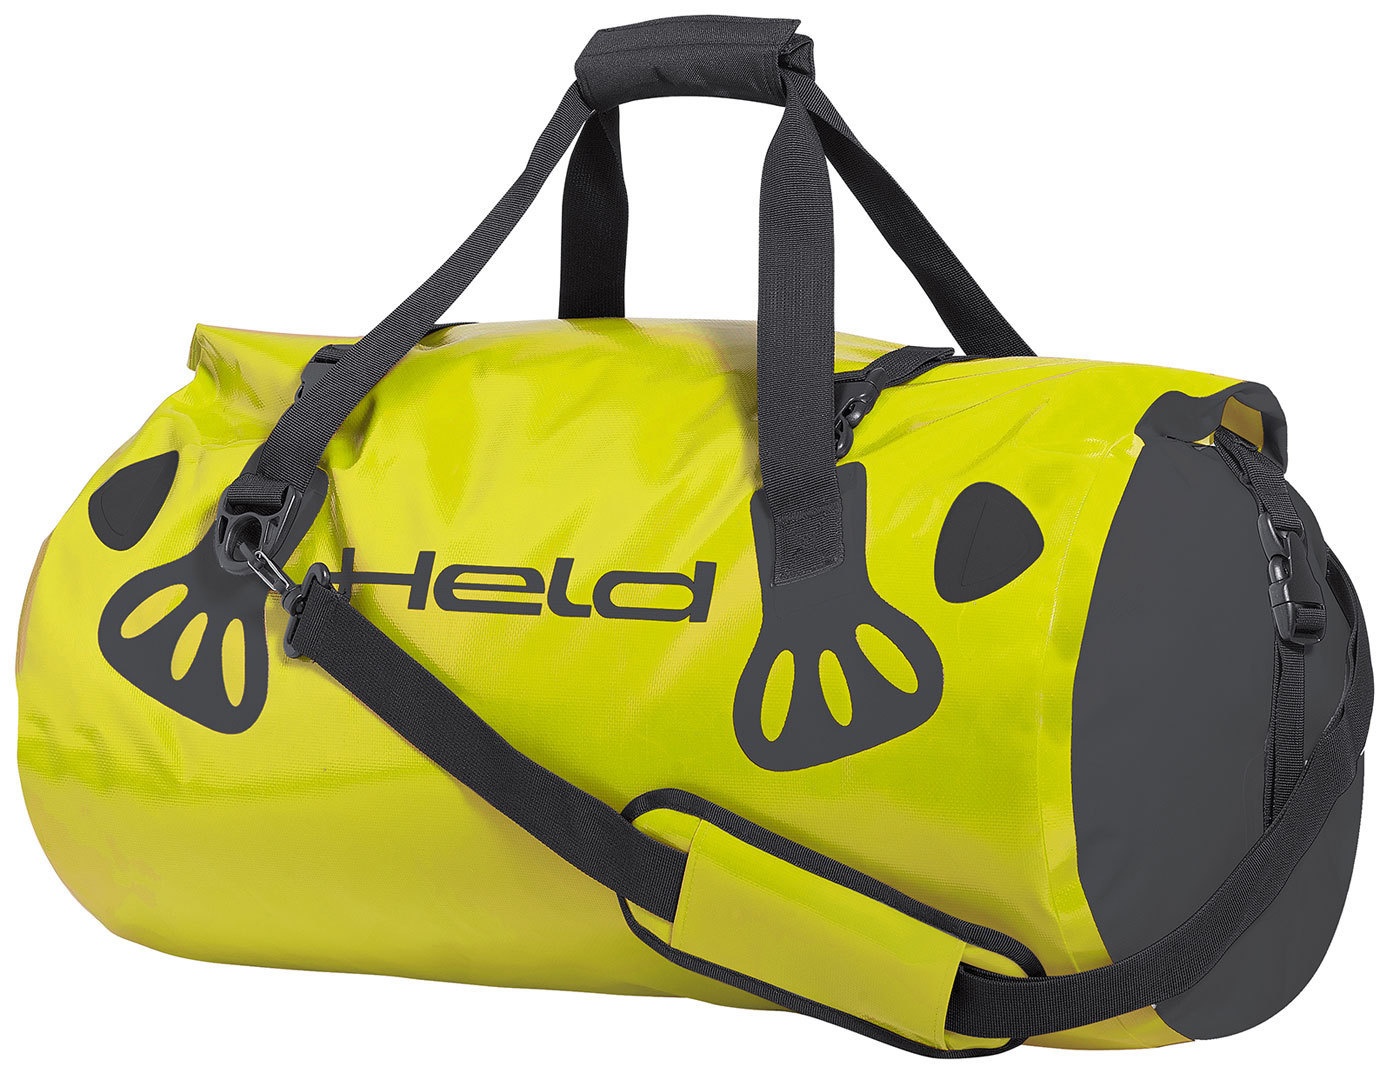 Held Carry-Bag Bagage tas, zwart-geel, 21-30l